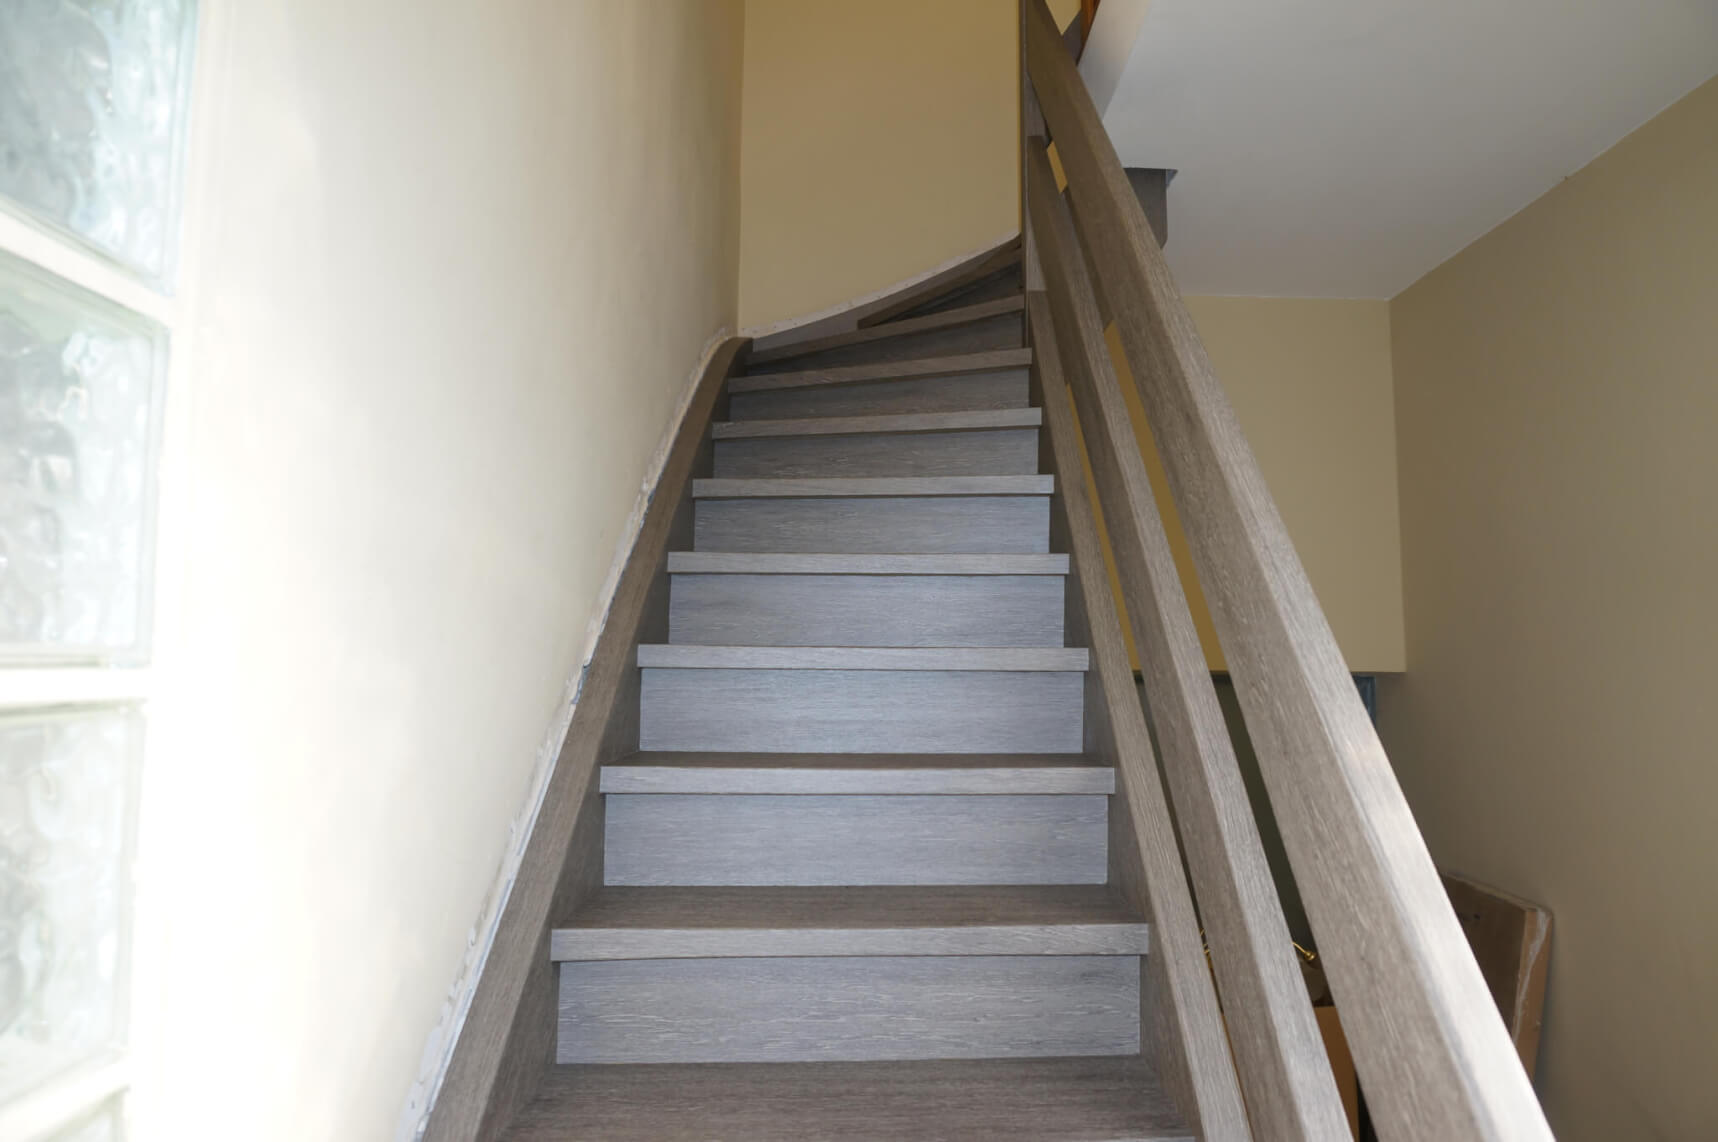 Treppenaufgang im Haus als moderne Inneneinrichtung neue Beschichtung in Holzoptik 01 